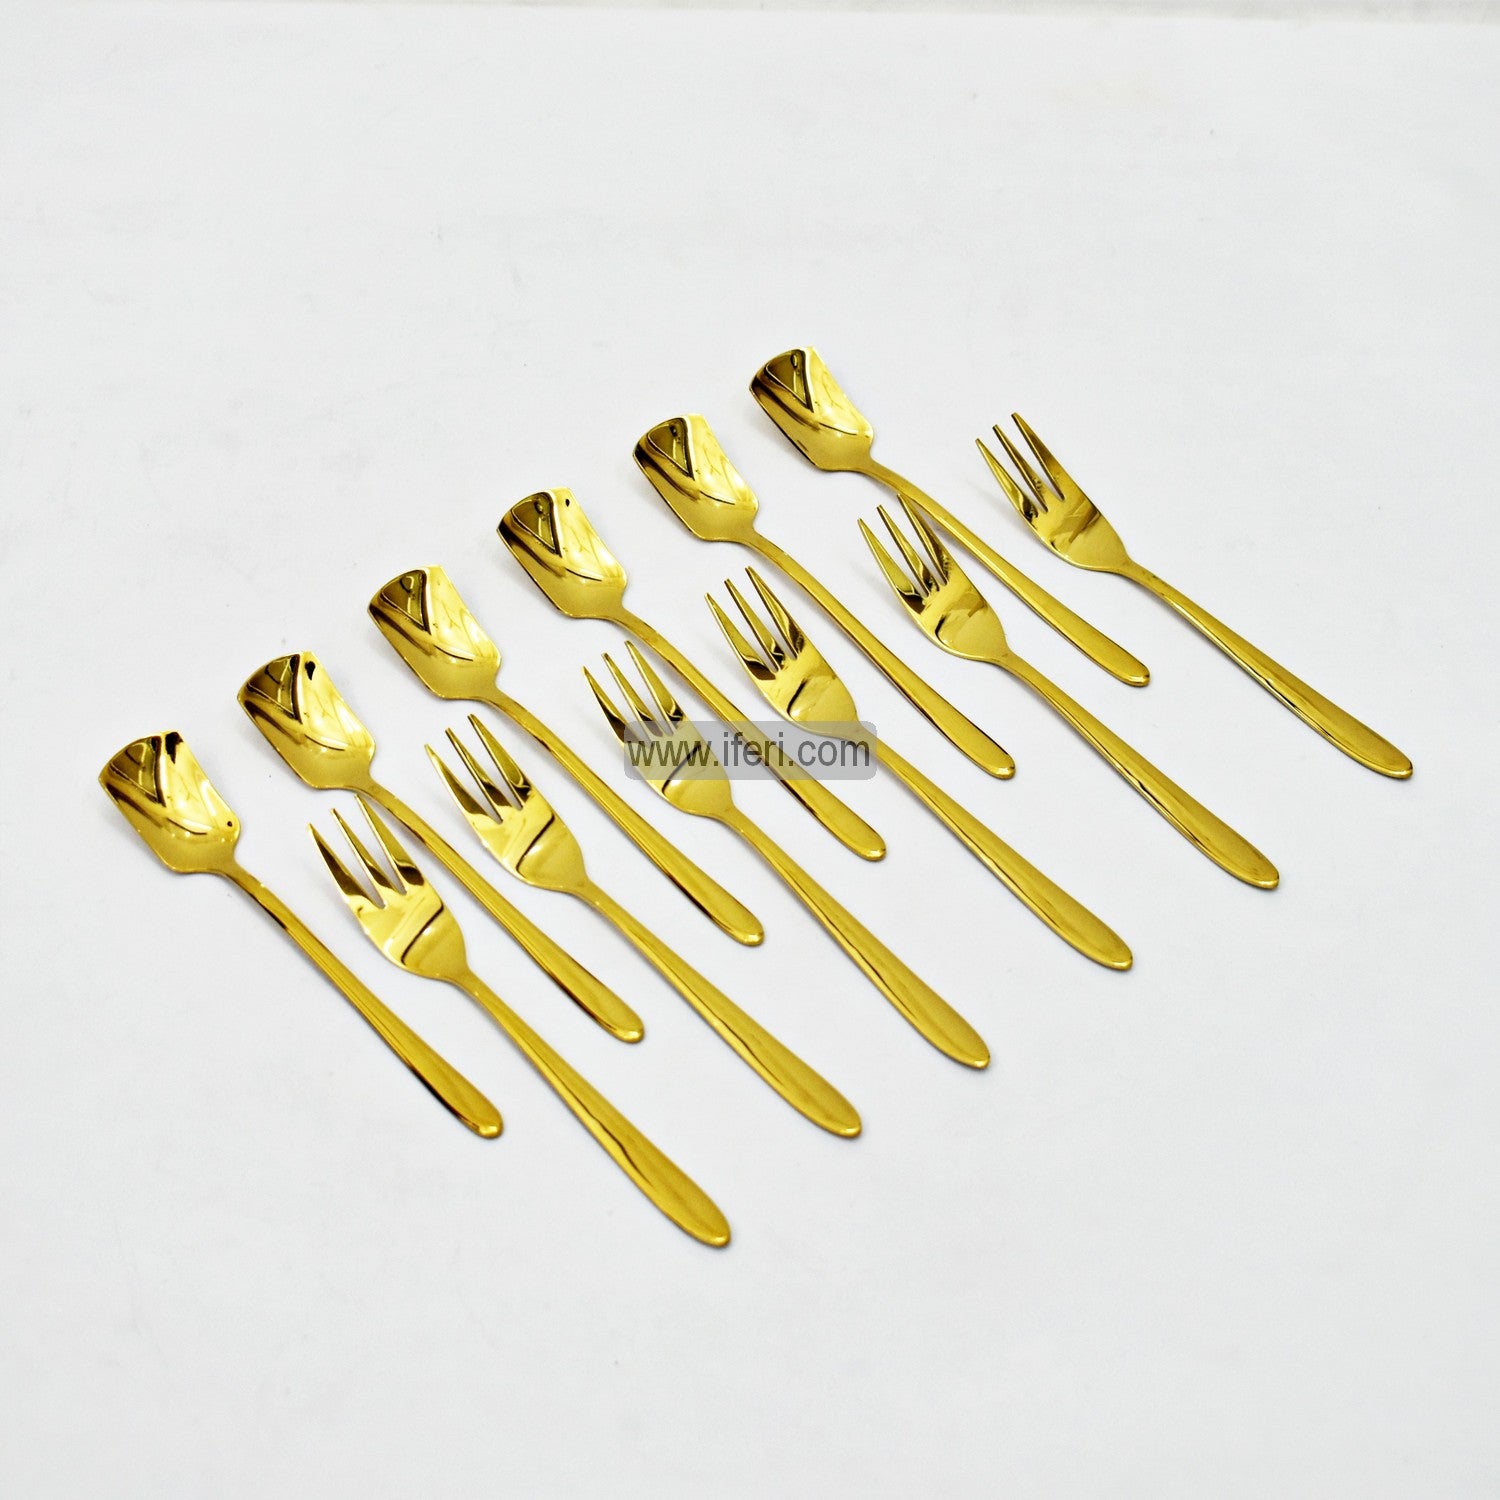 12 Pcs Stainless Steel Tea Spoon & Fork Set EB21184